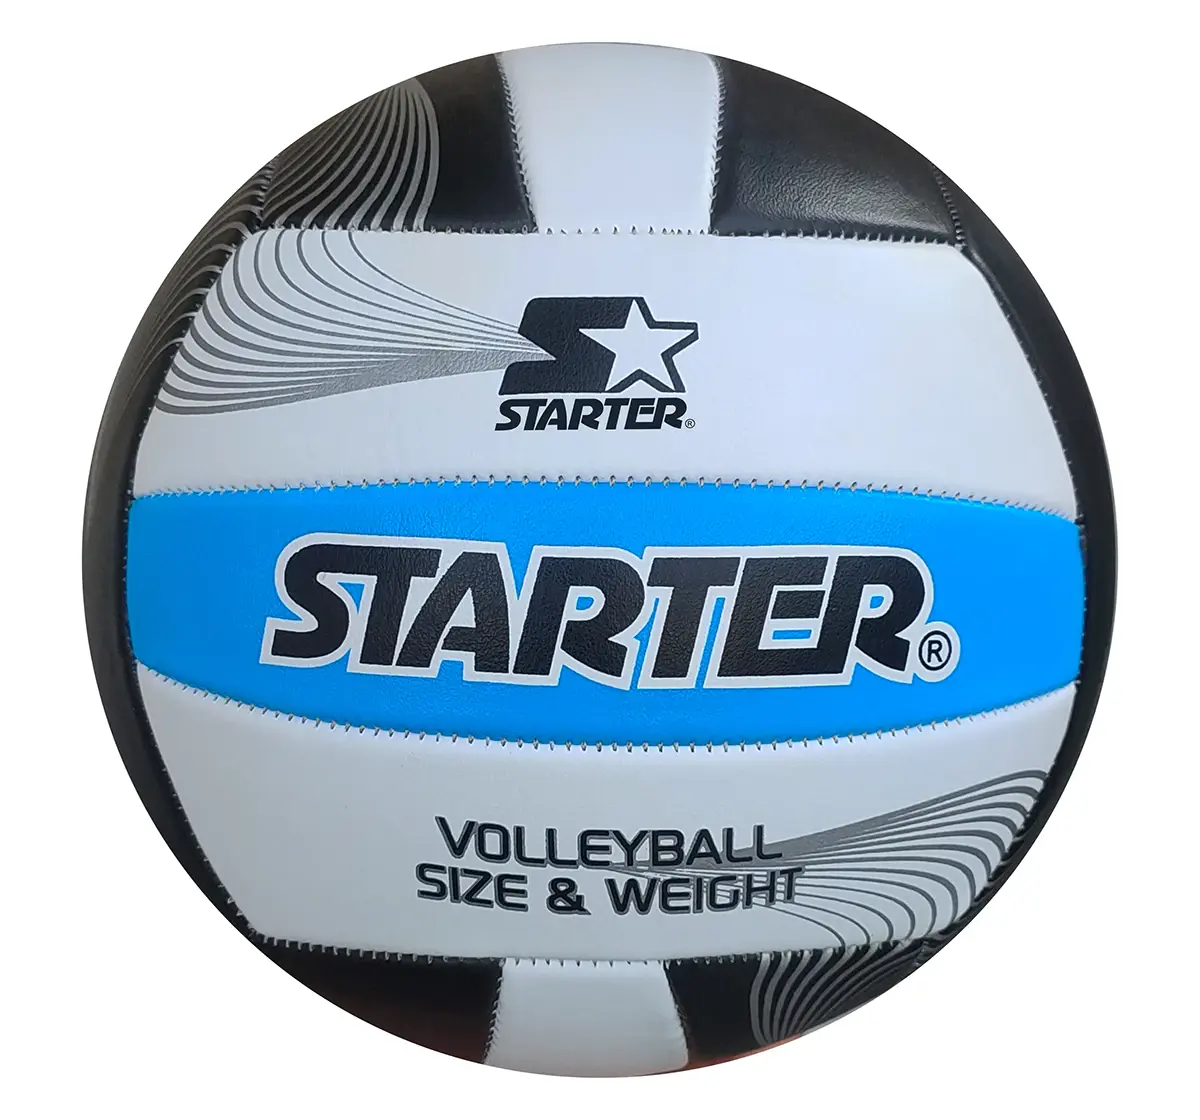 Starter Volleyball Multicolor 8Y+